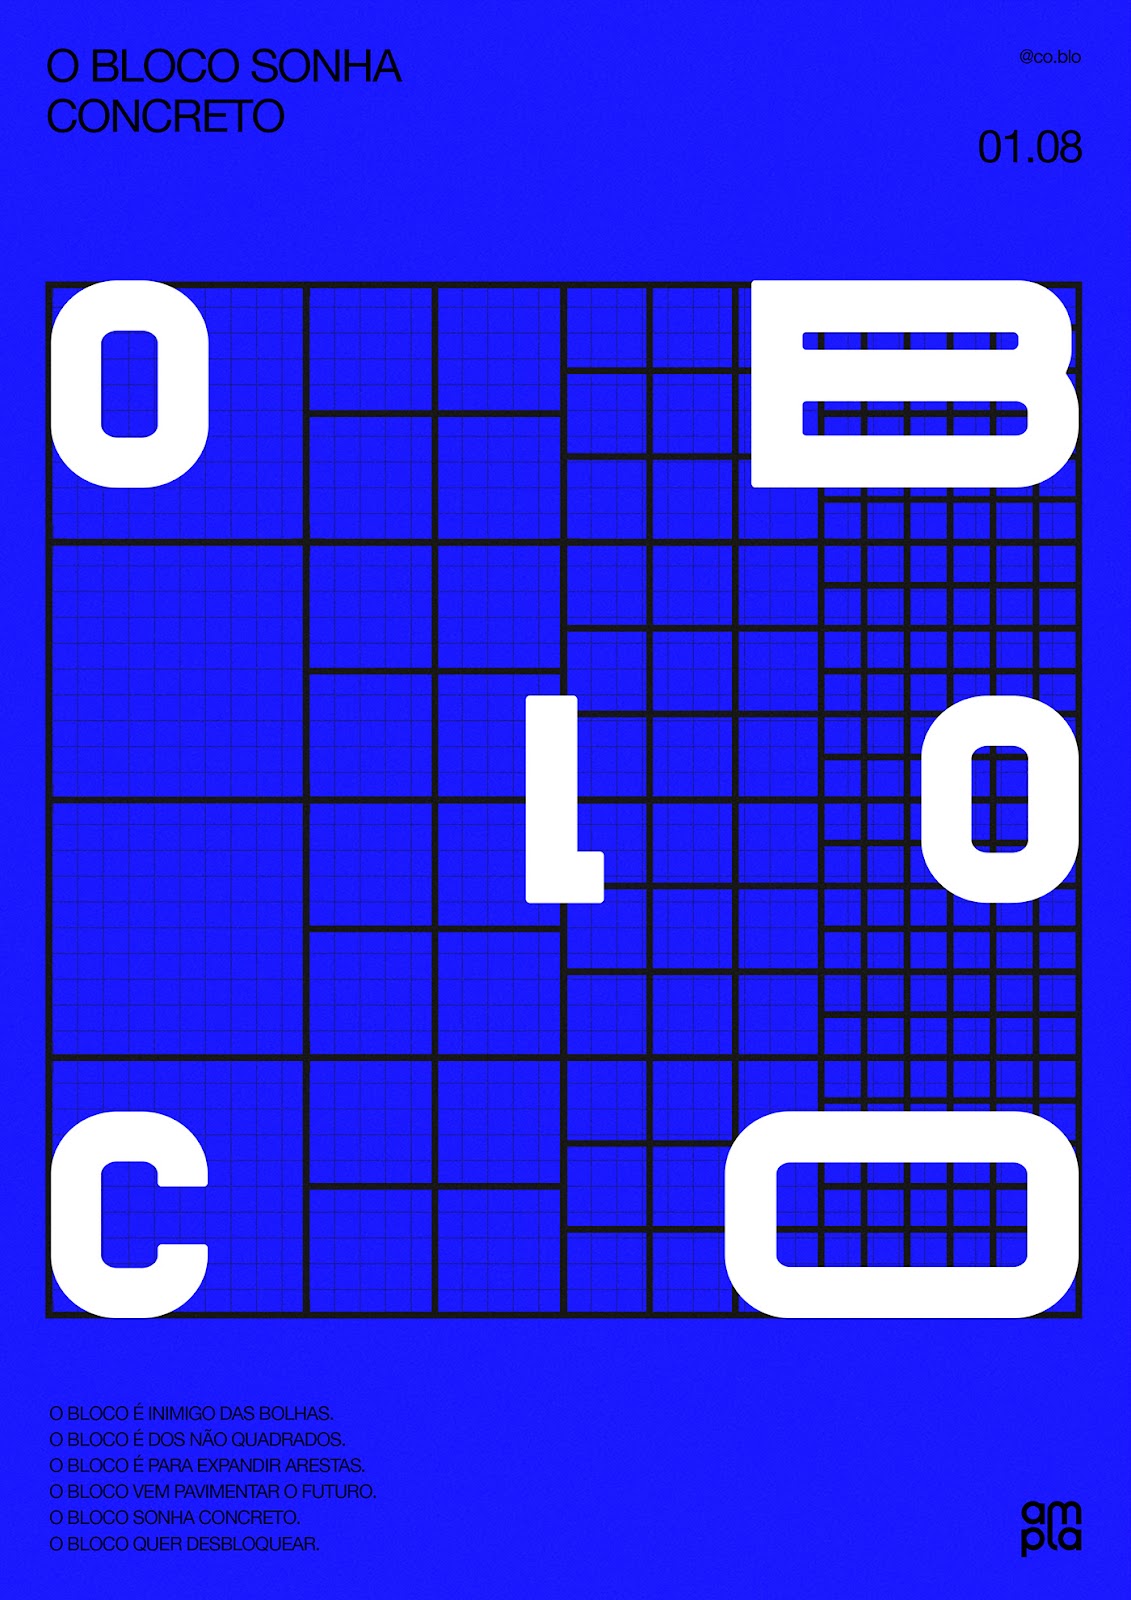 O BLOCO潮流前卫的品牌视觉设计